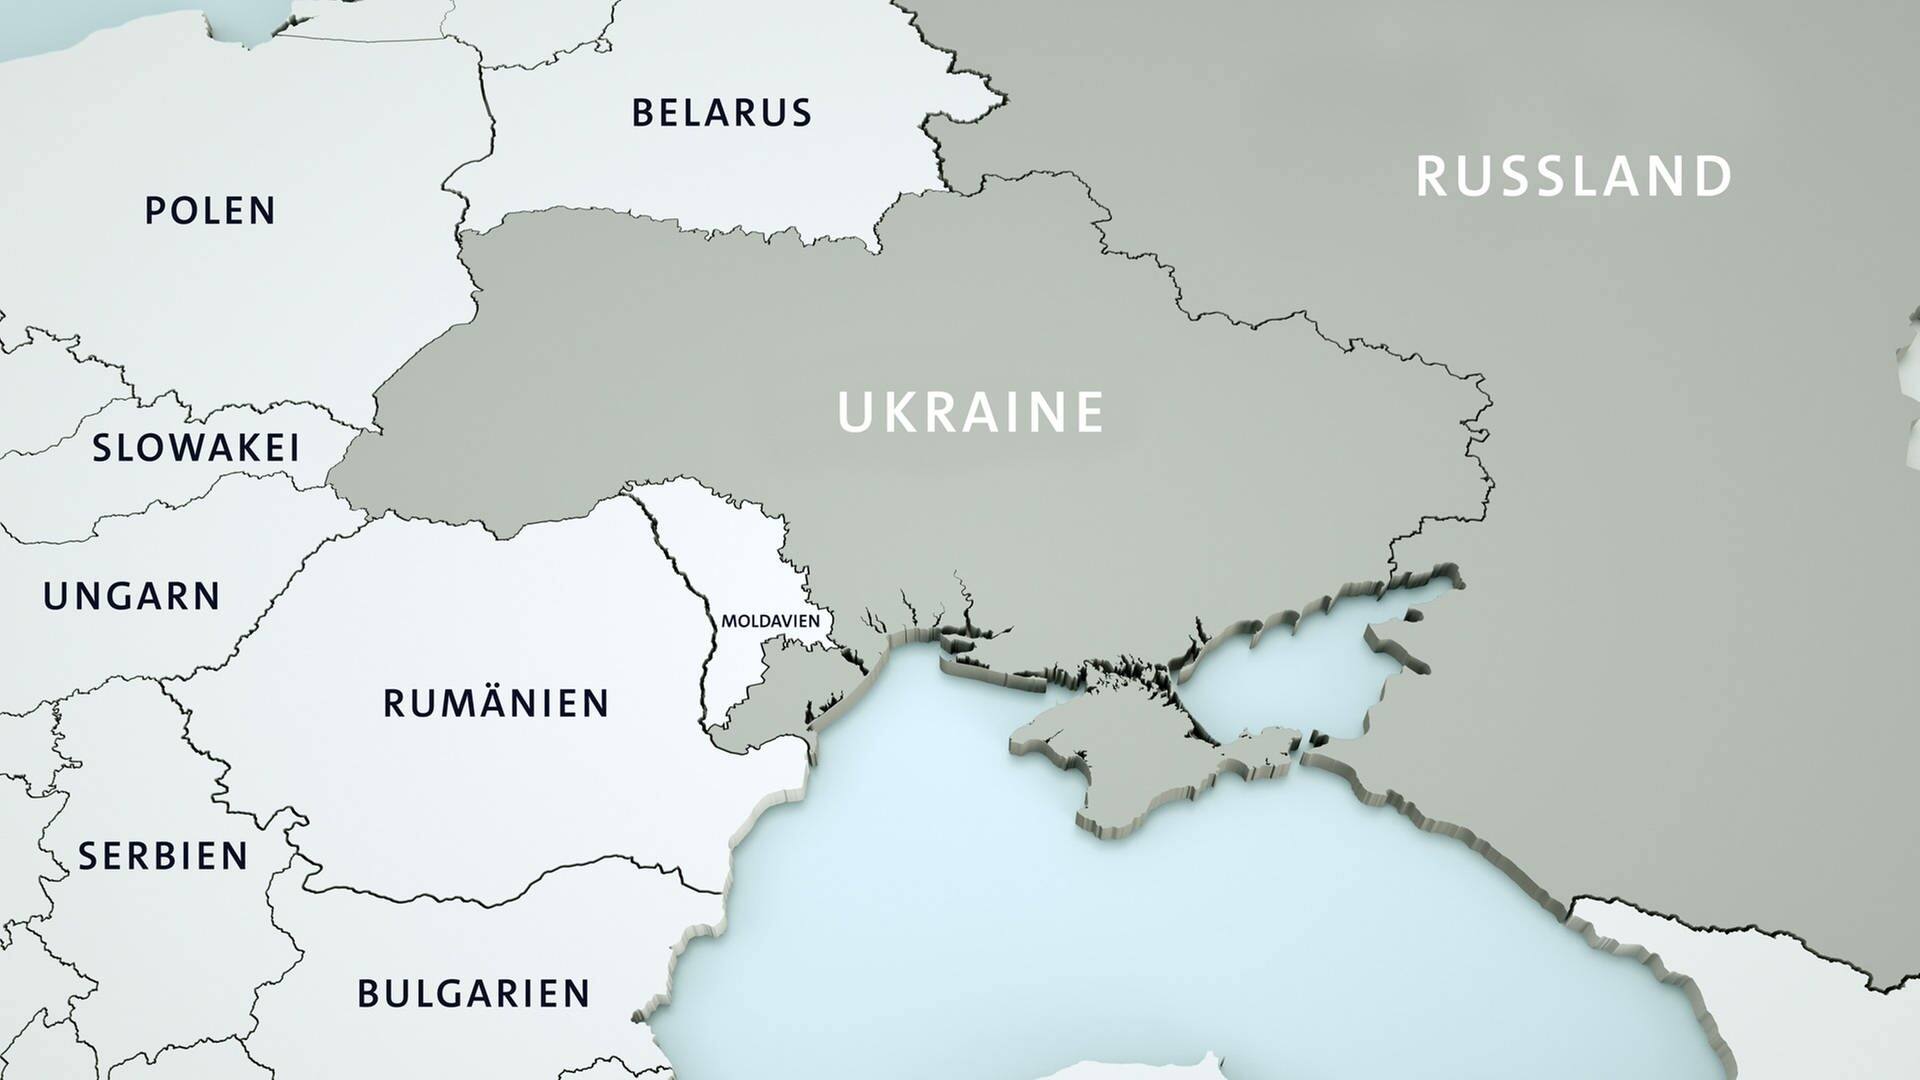 Übersichtskarte von Osteuropa mit der Ukraine im Zentrum und den Anrainerstaaten. Die Ukraine und Russland sind hervorgehoben. (Foto: Crevis/Shutterstock)